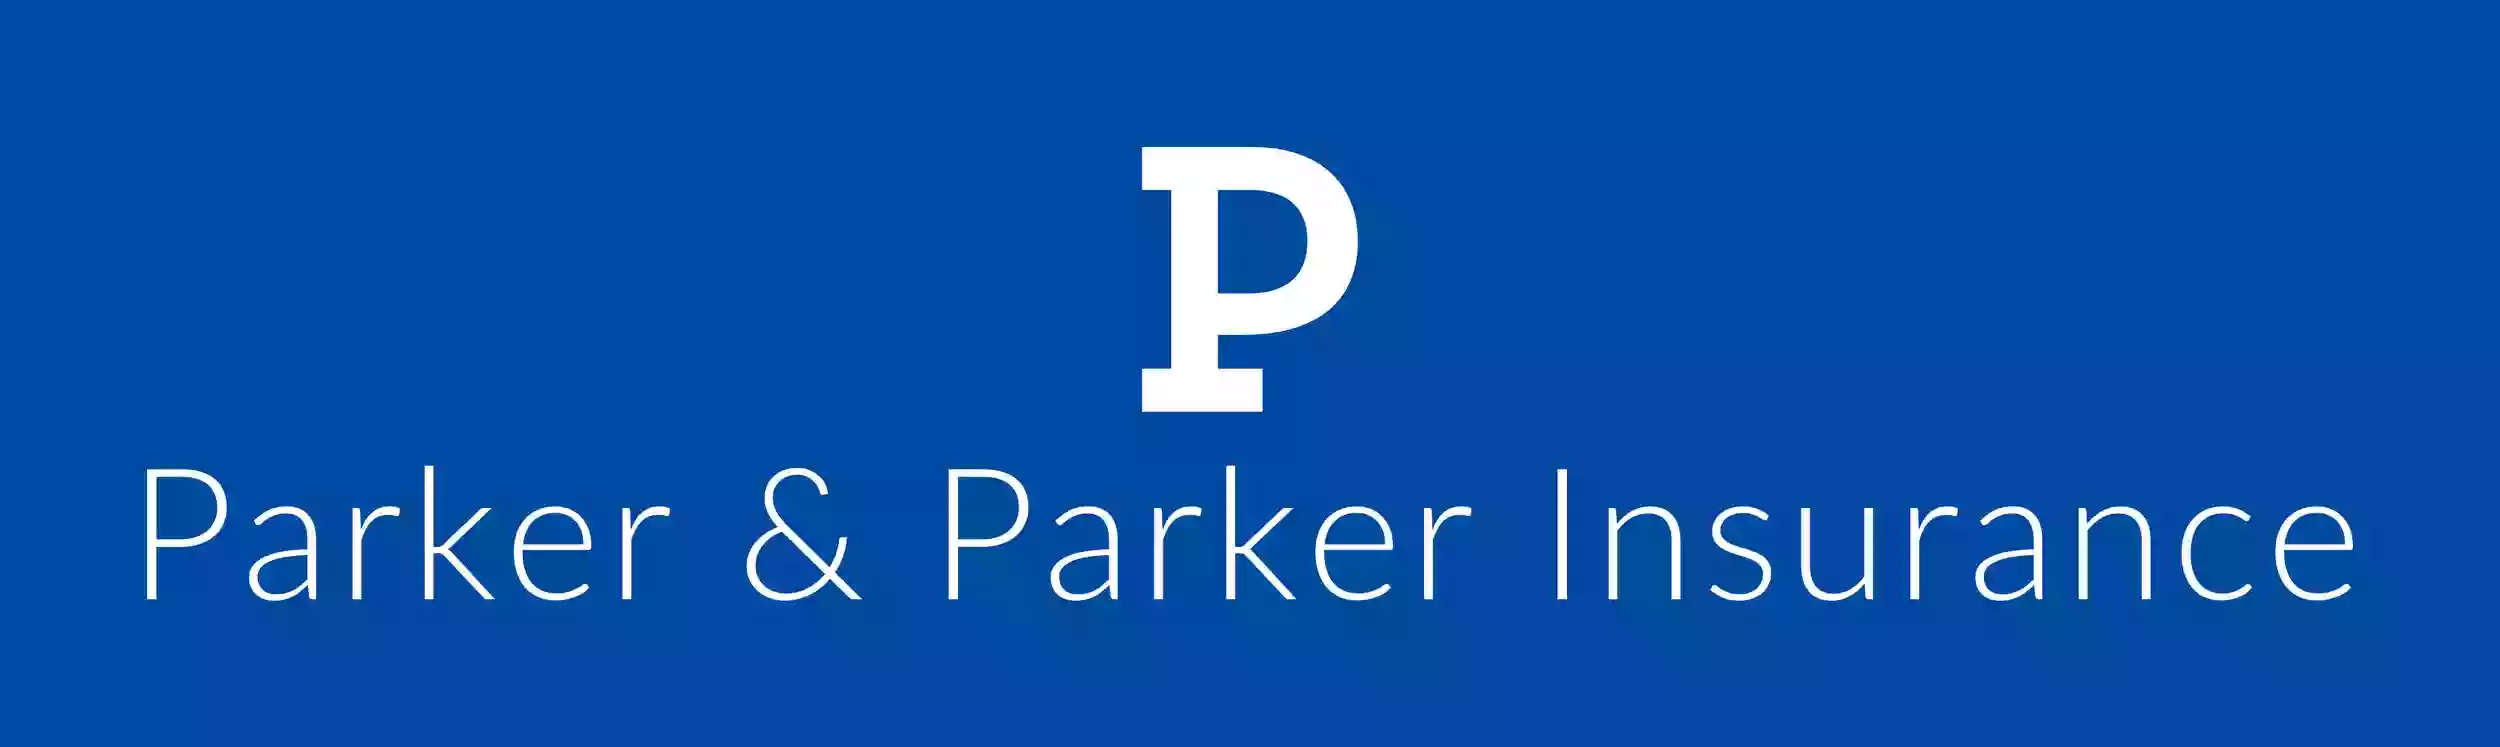 Parker & Parker Insurance